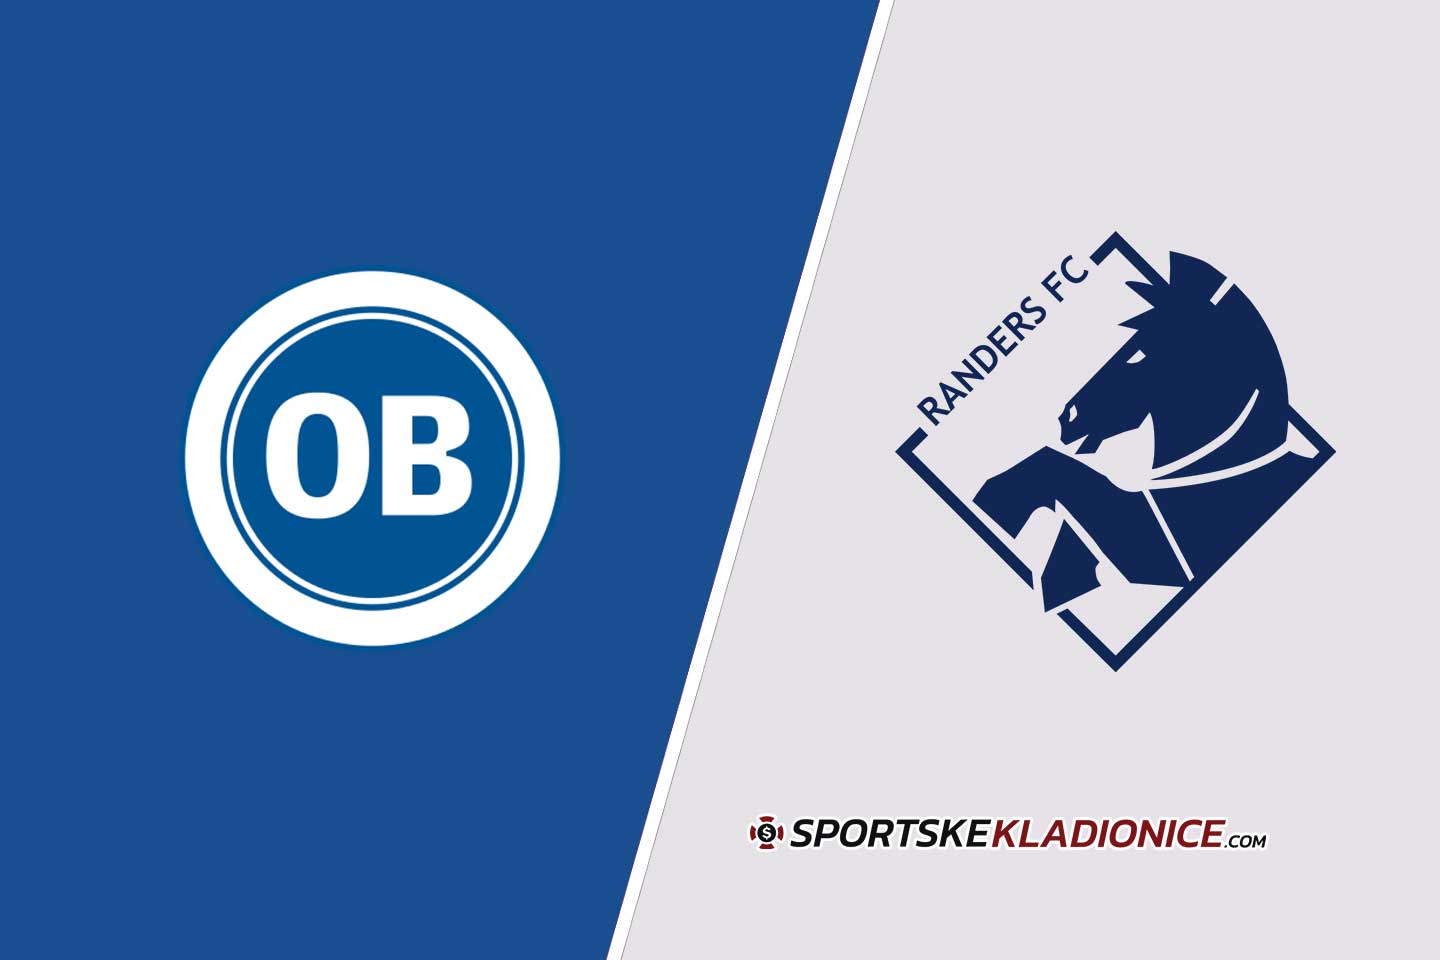 Odense vs Randers